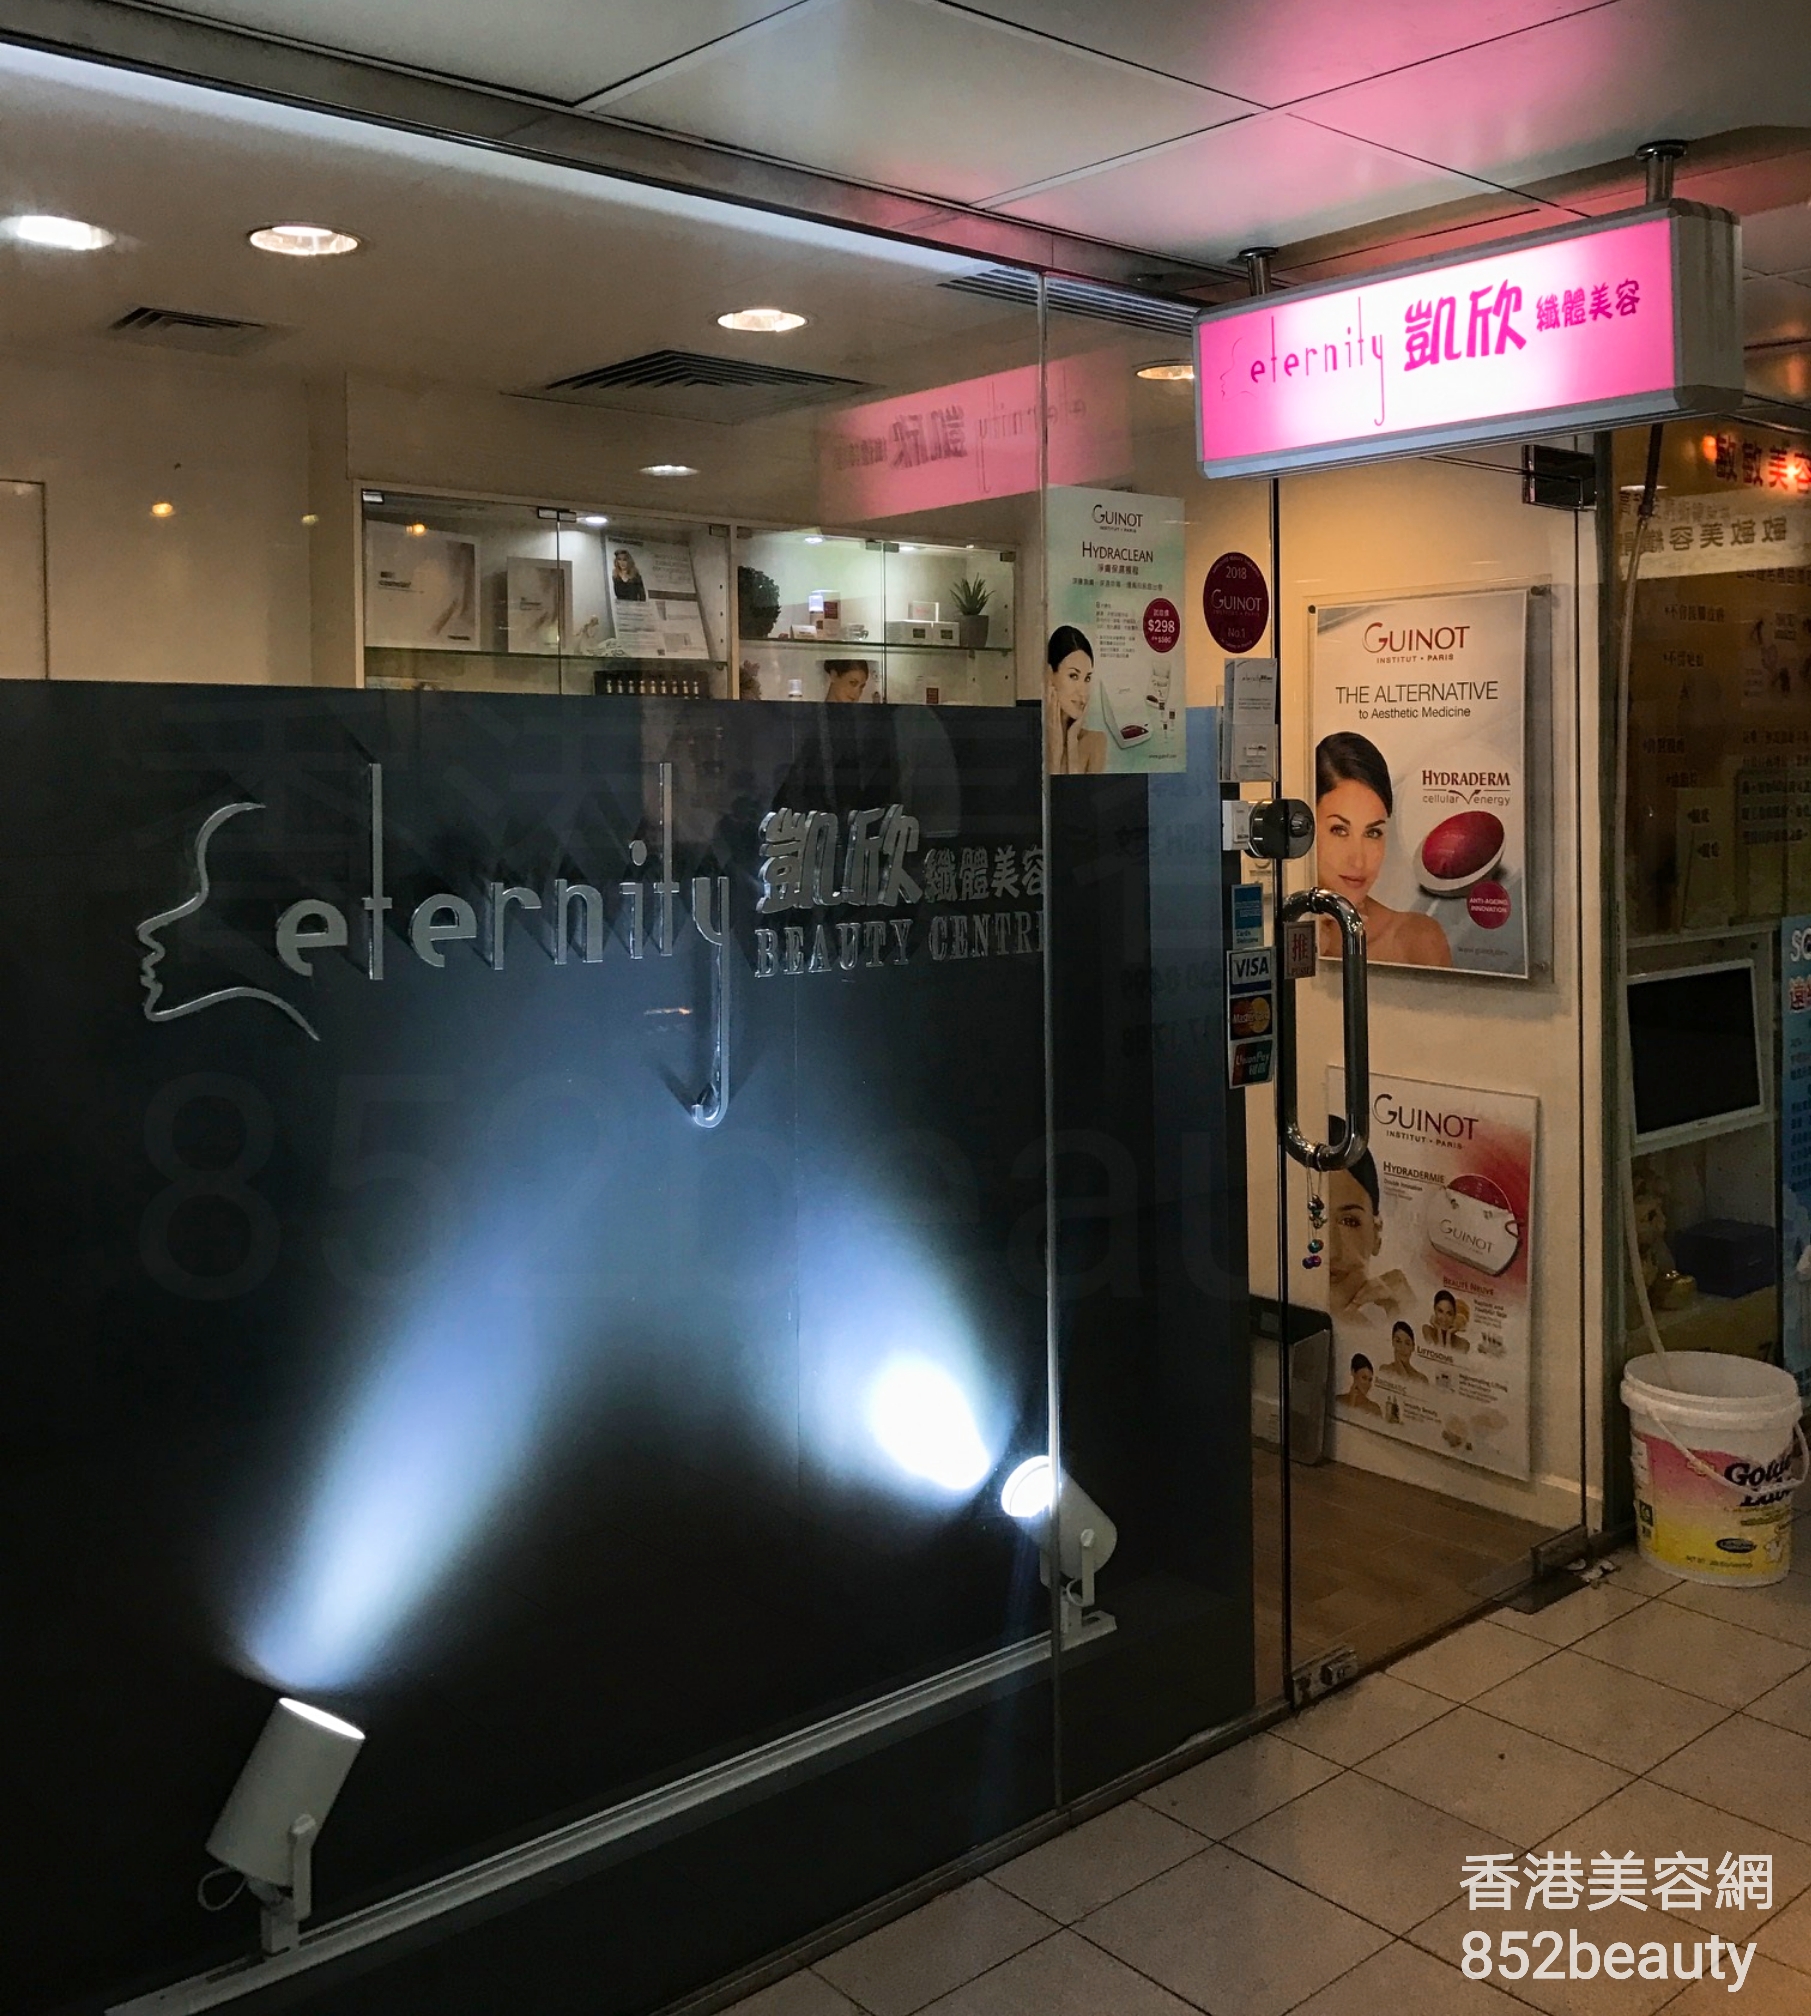 香港美容網 Hong Kong Beauty Salon 美容院 / 美容師: Eternity Beauty Centre 凱欣纖體美容